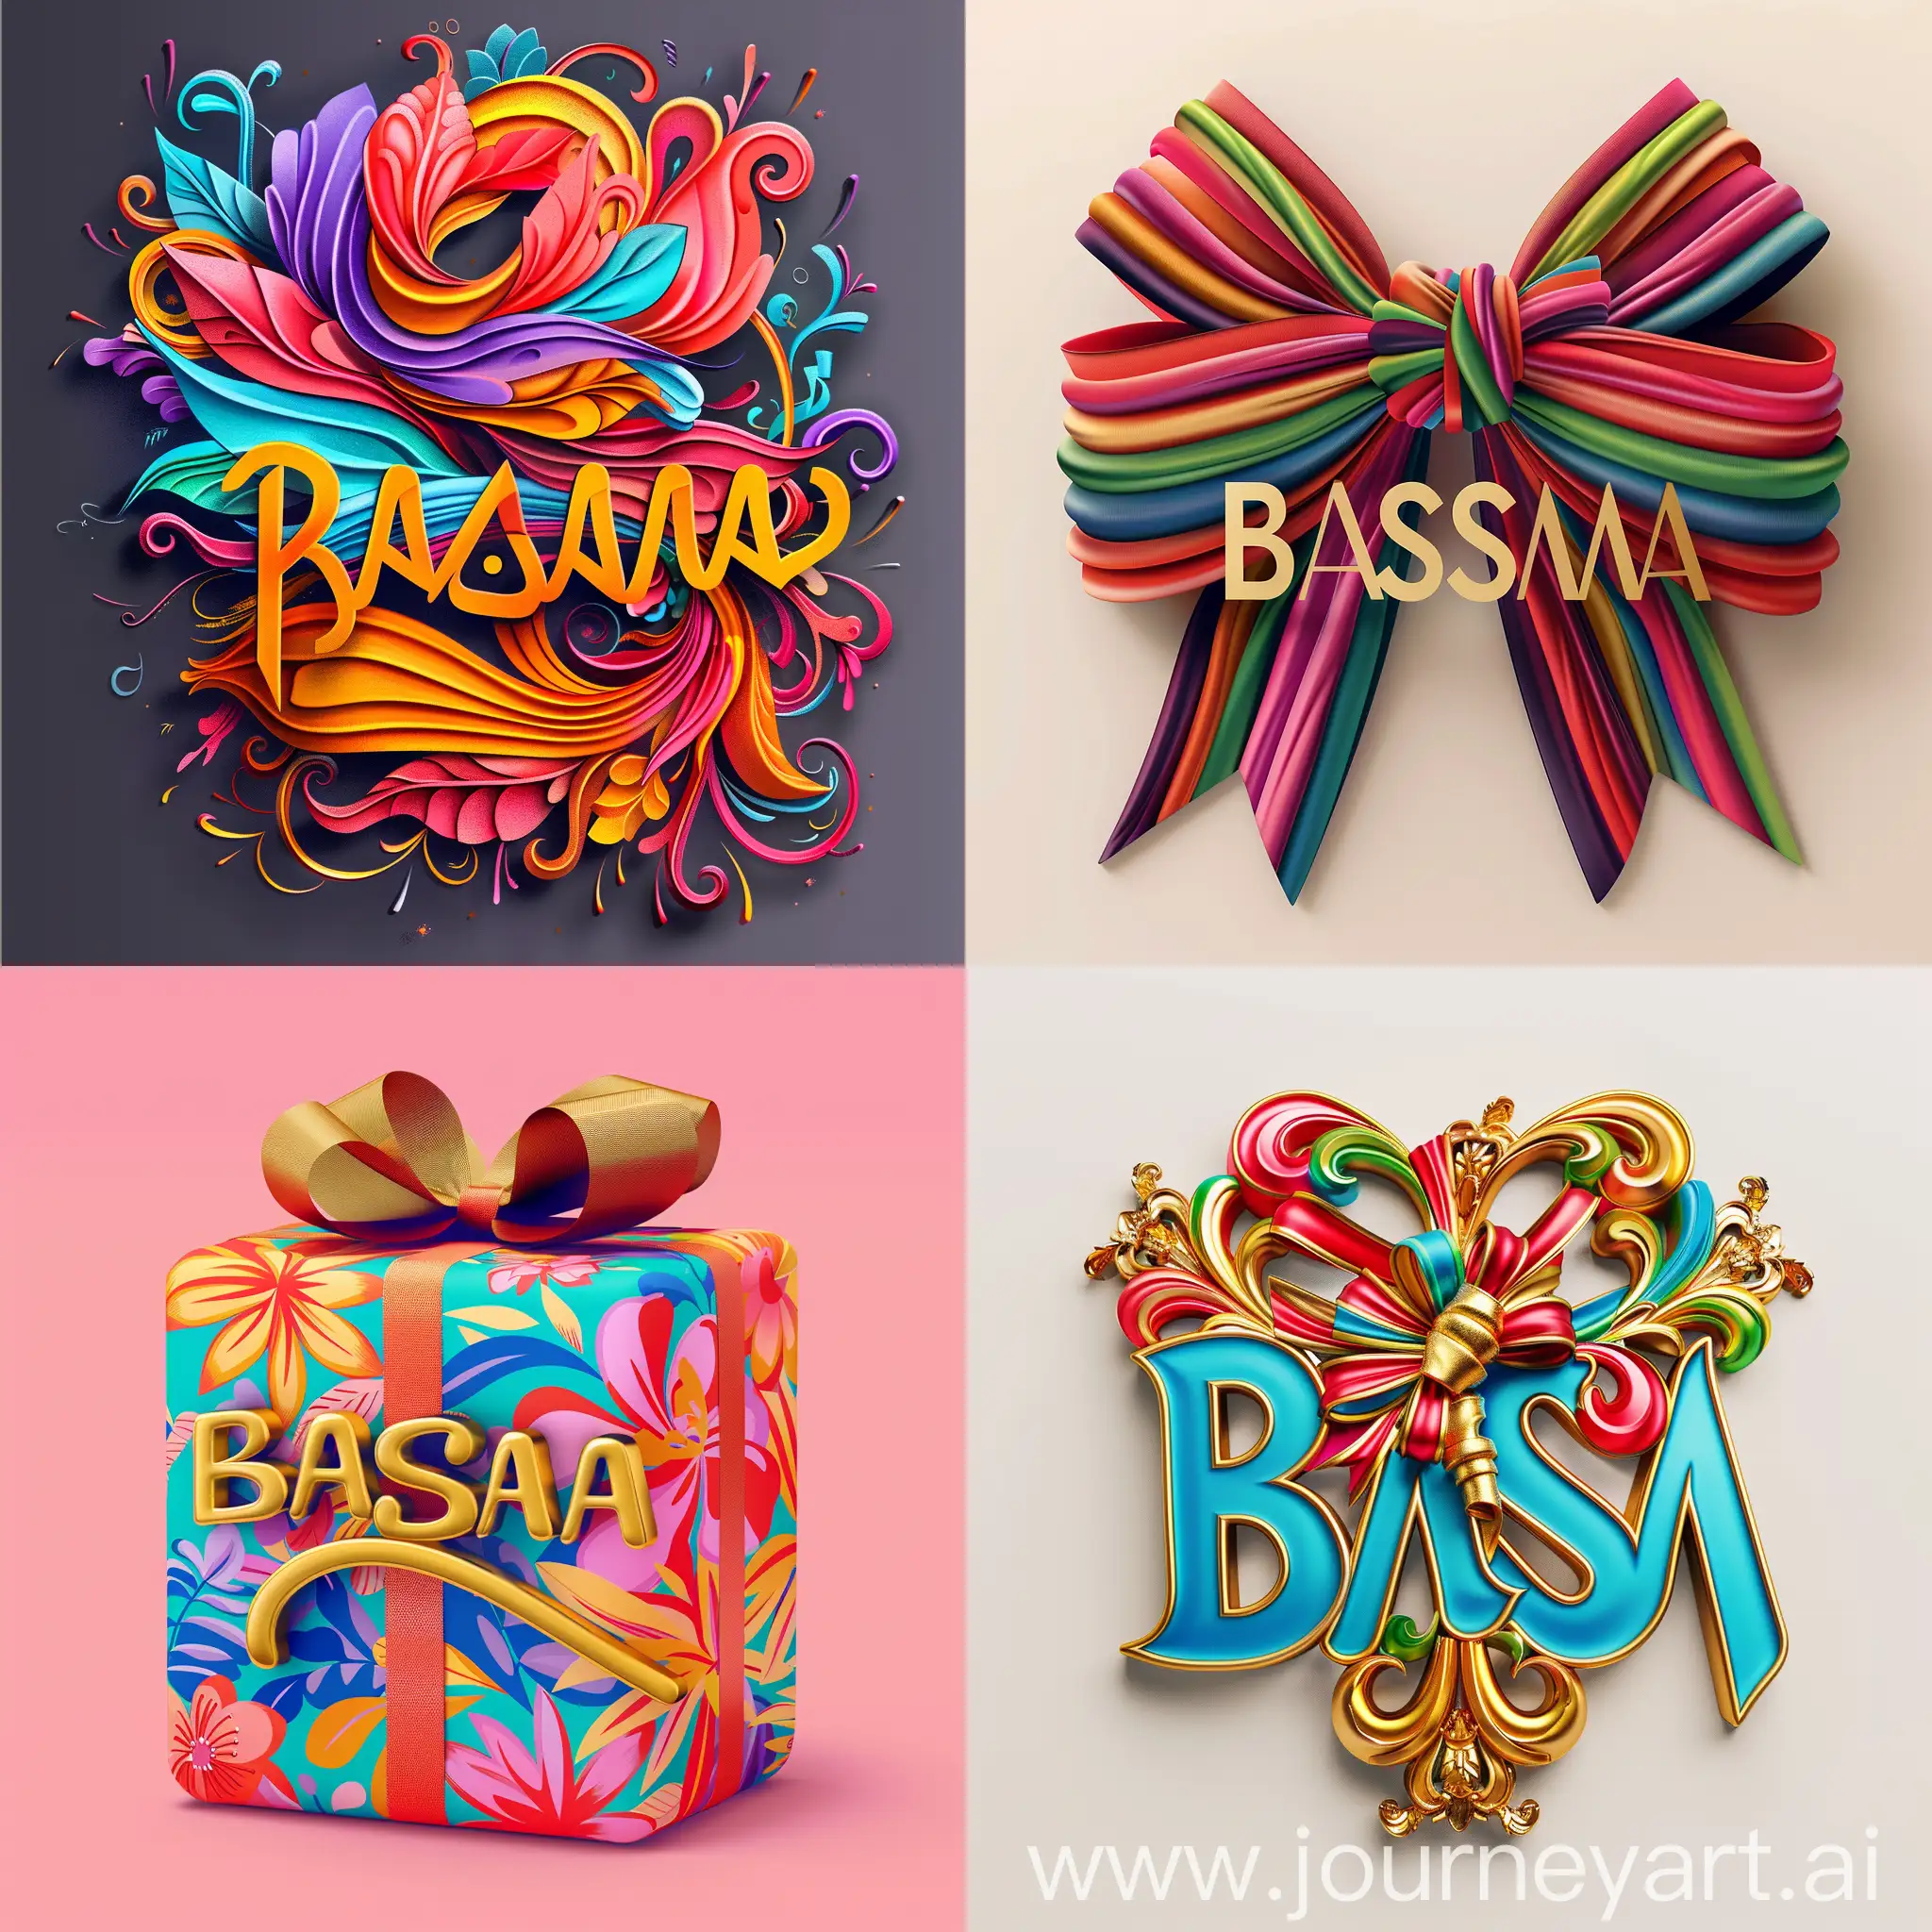 اريد تصميم لاسم BASMA تصميم خرافي مع الوان جميلة وملفاة